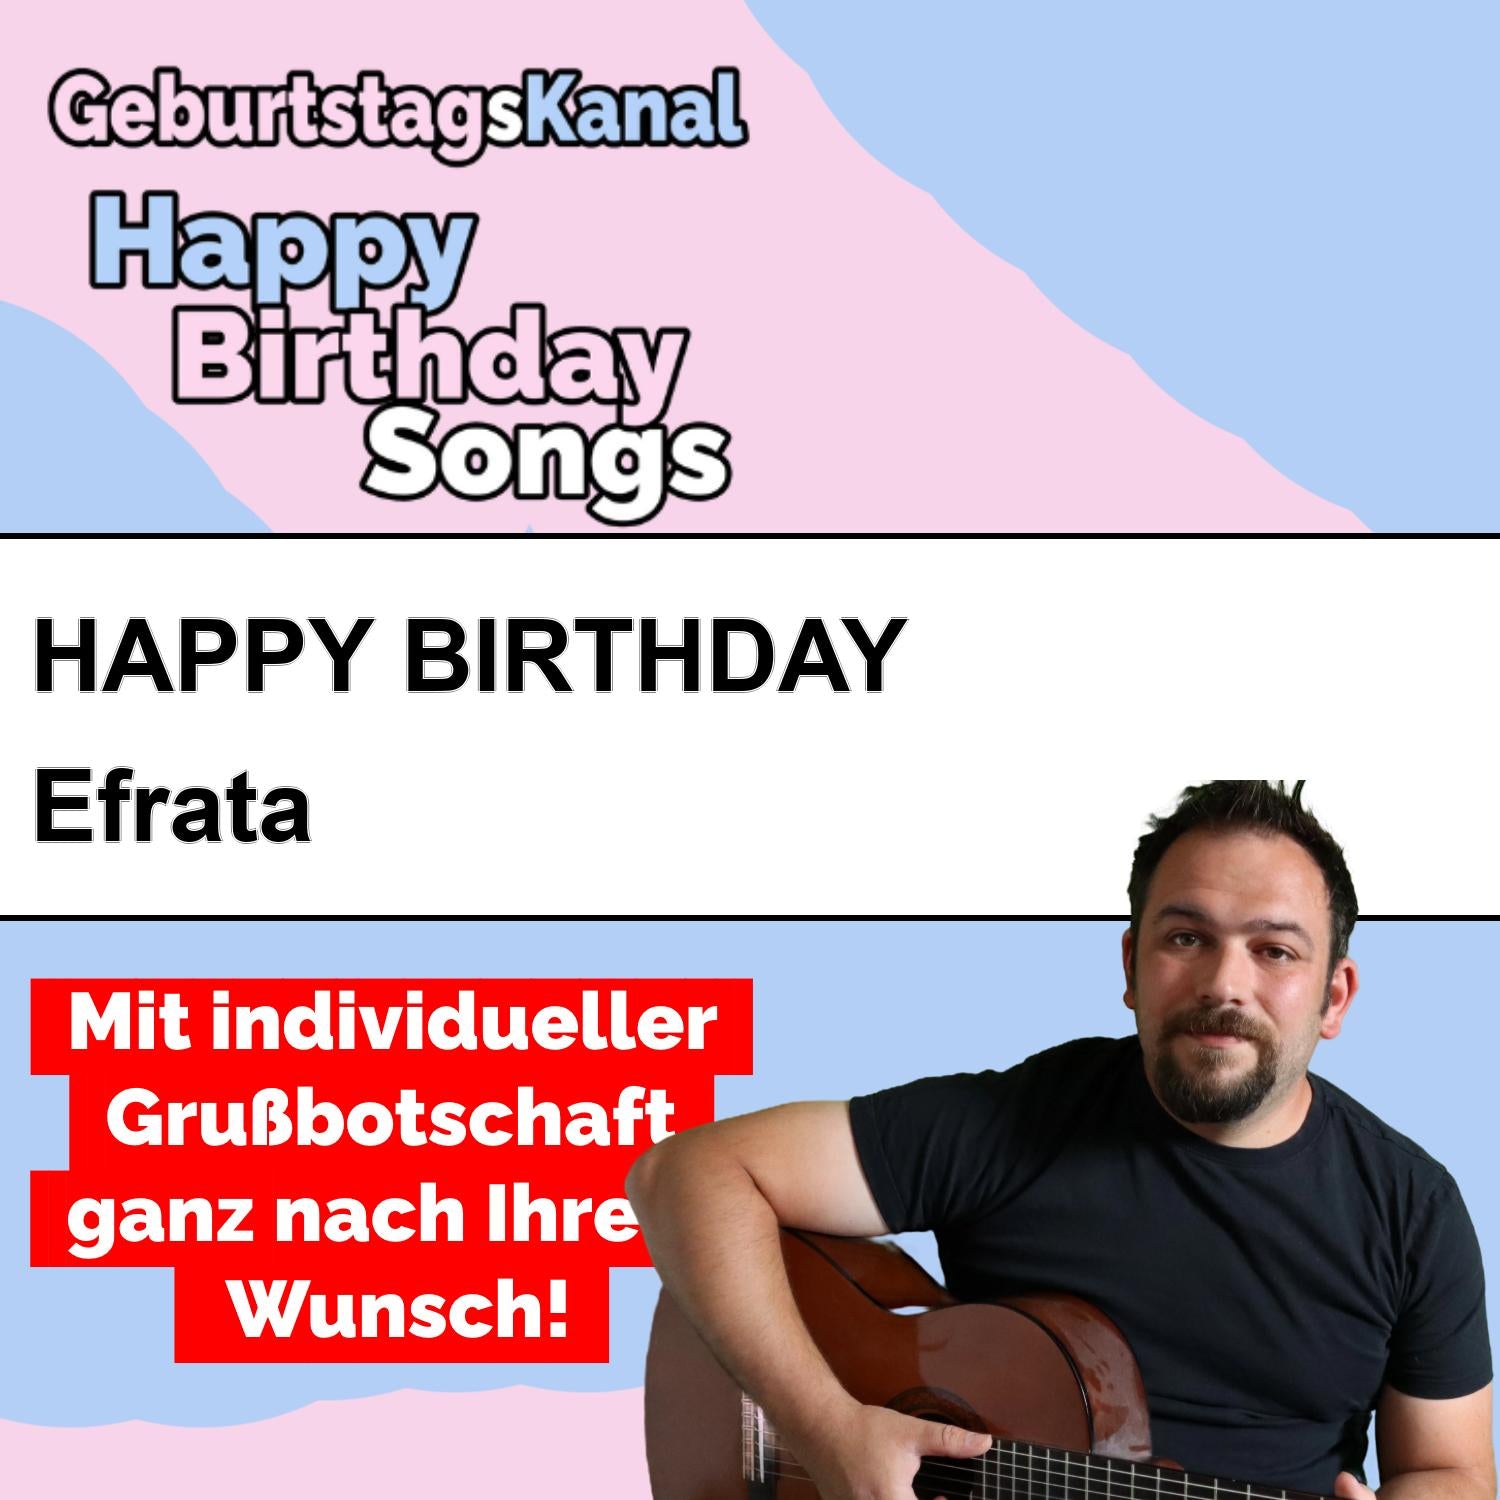 Produktbild Happy Birthday to you Efrata mit Wunschgrußbotschaft